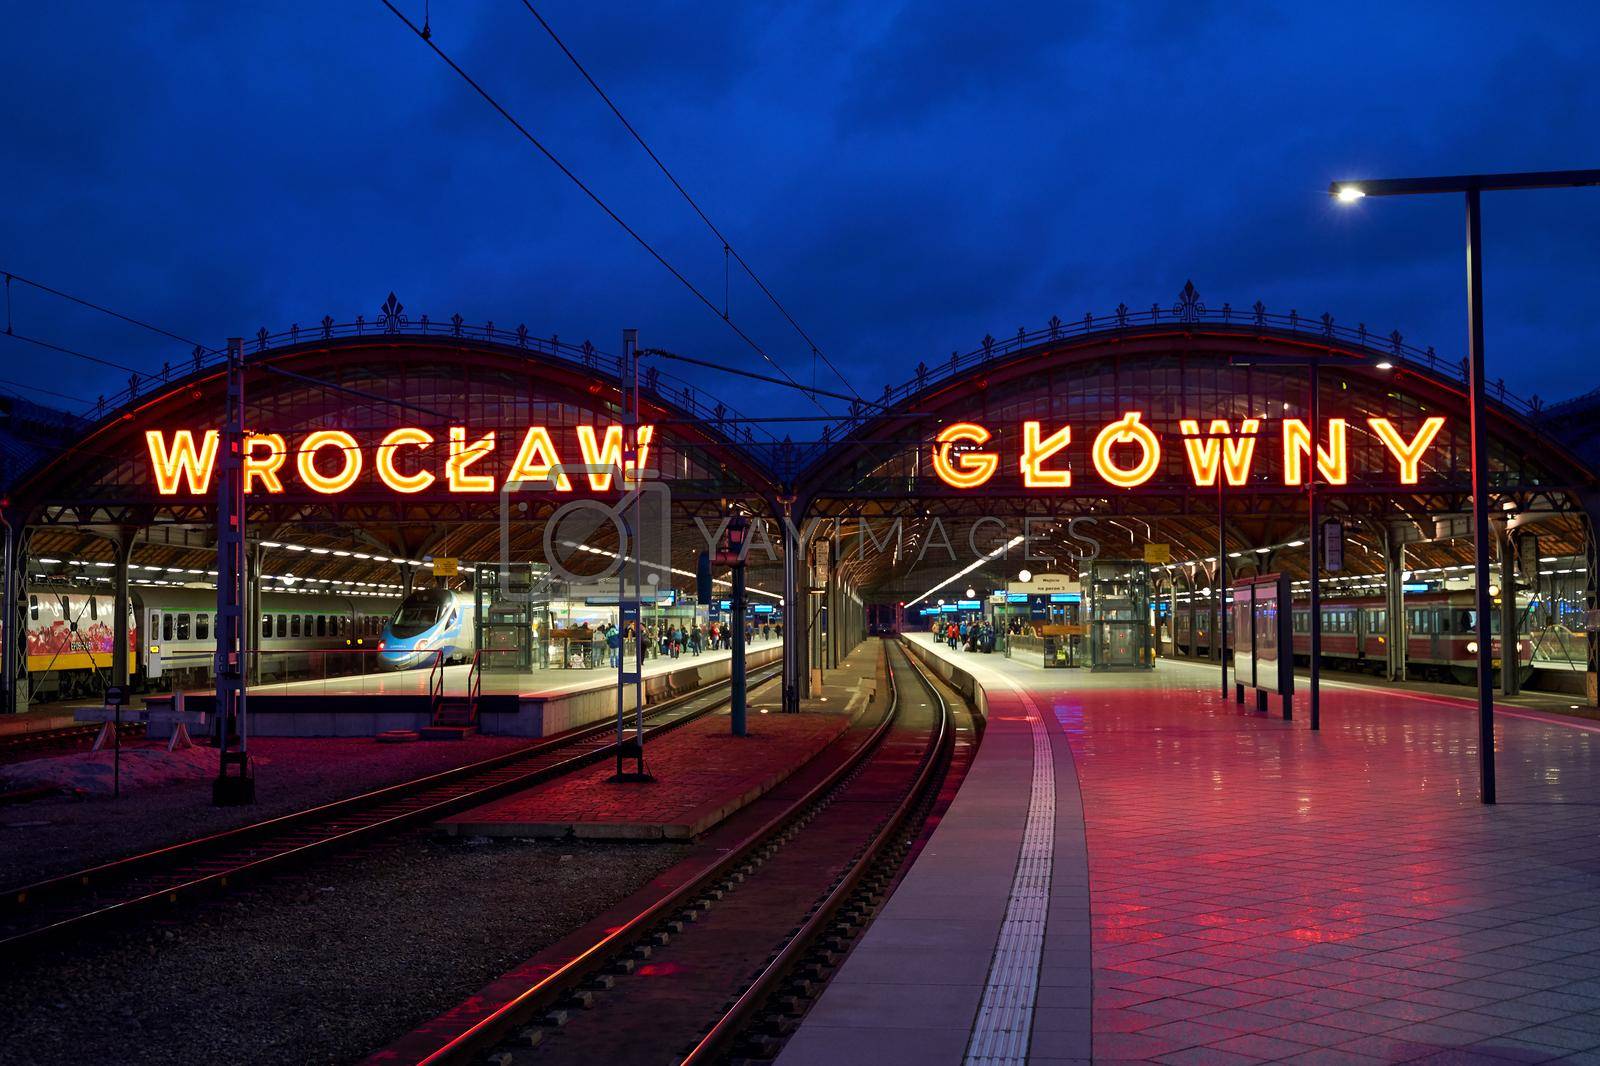 Wroclaw, Poland, Jan 2, 2019: Platform of Wroclaw Glowny railway station at dusk.